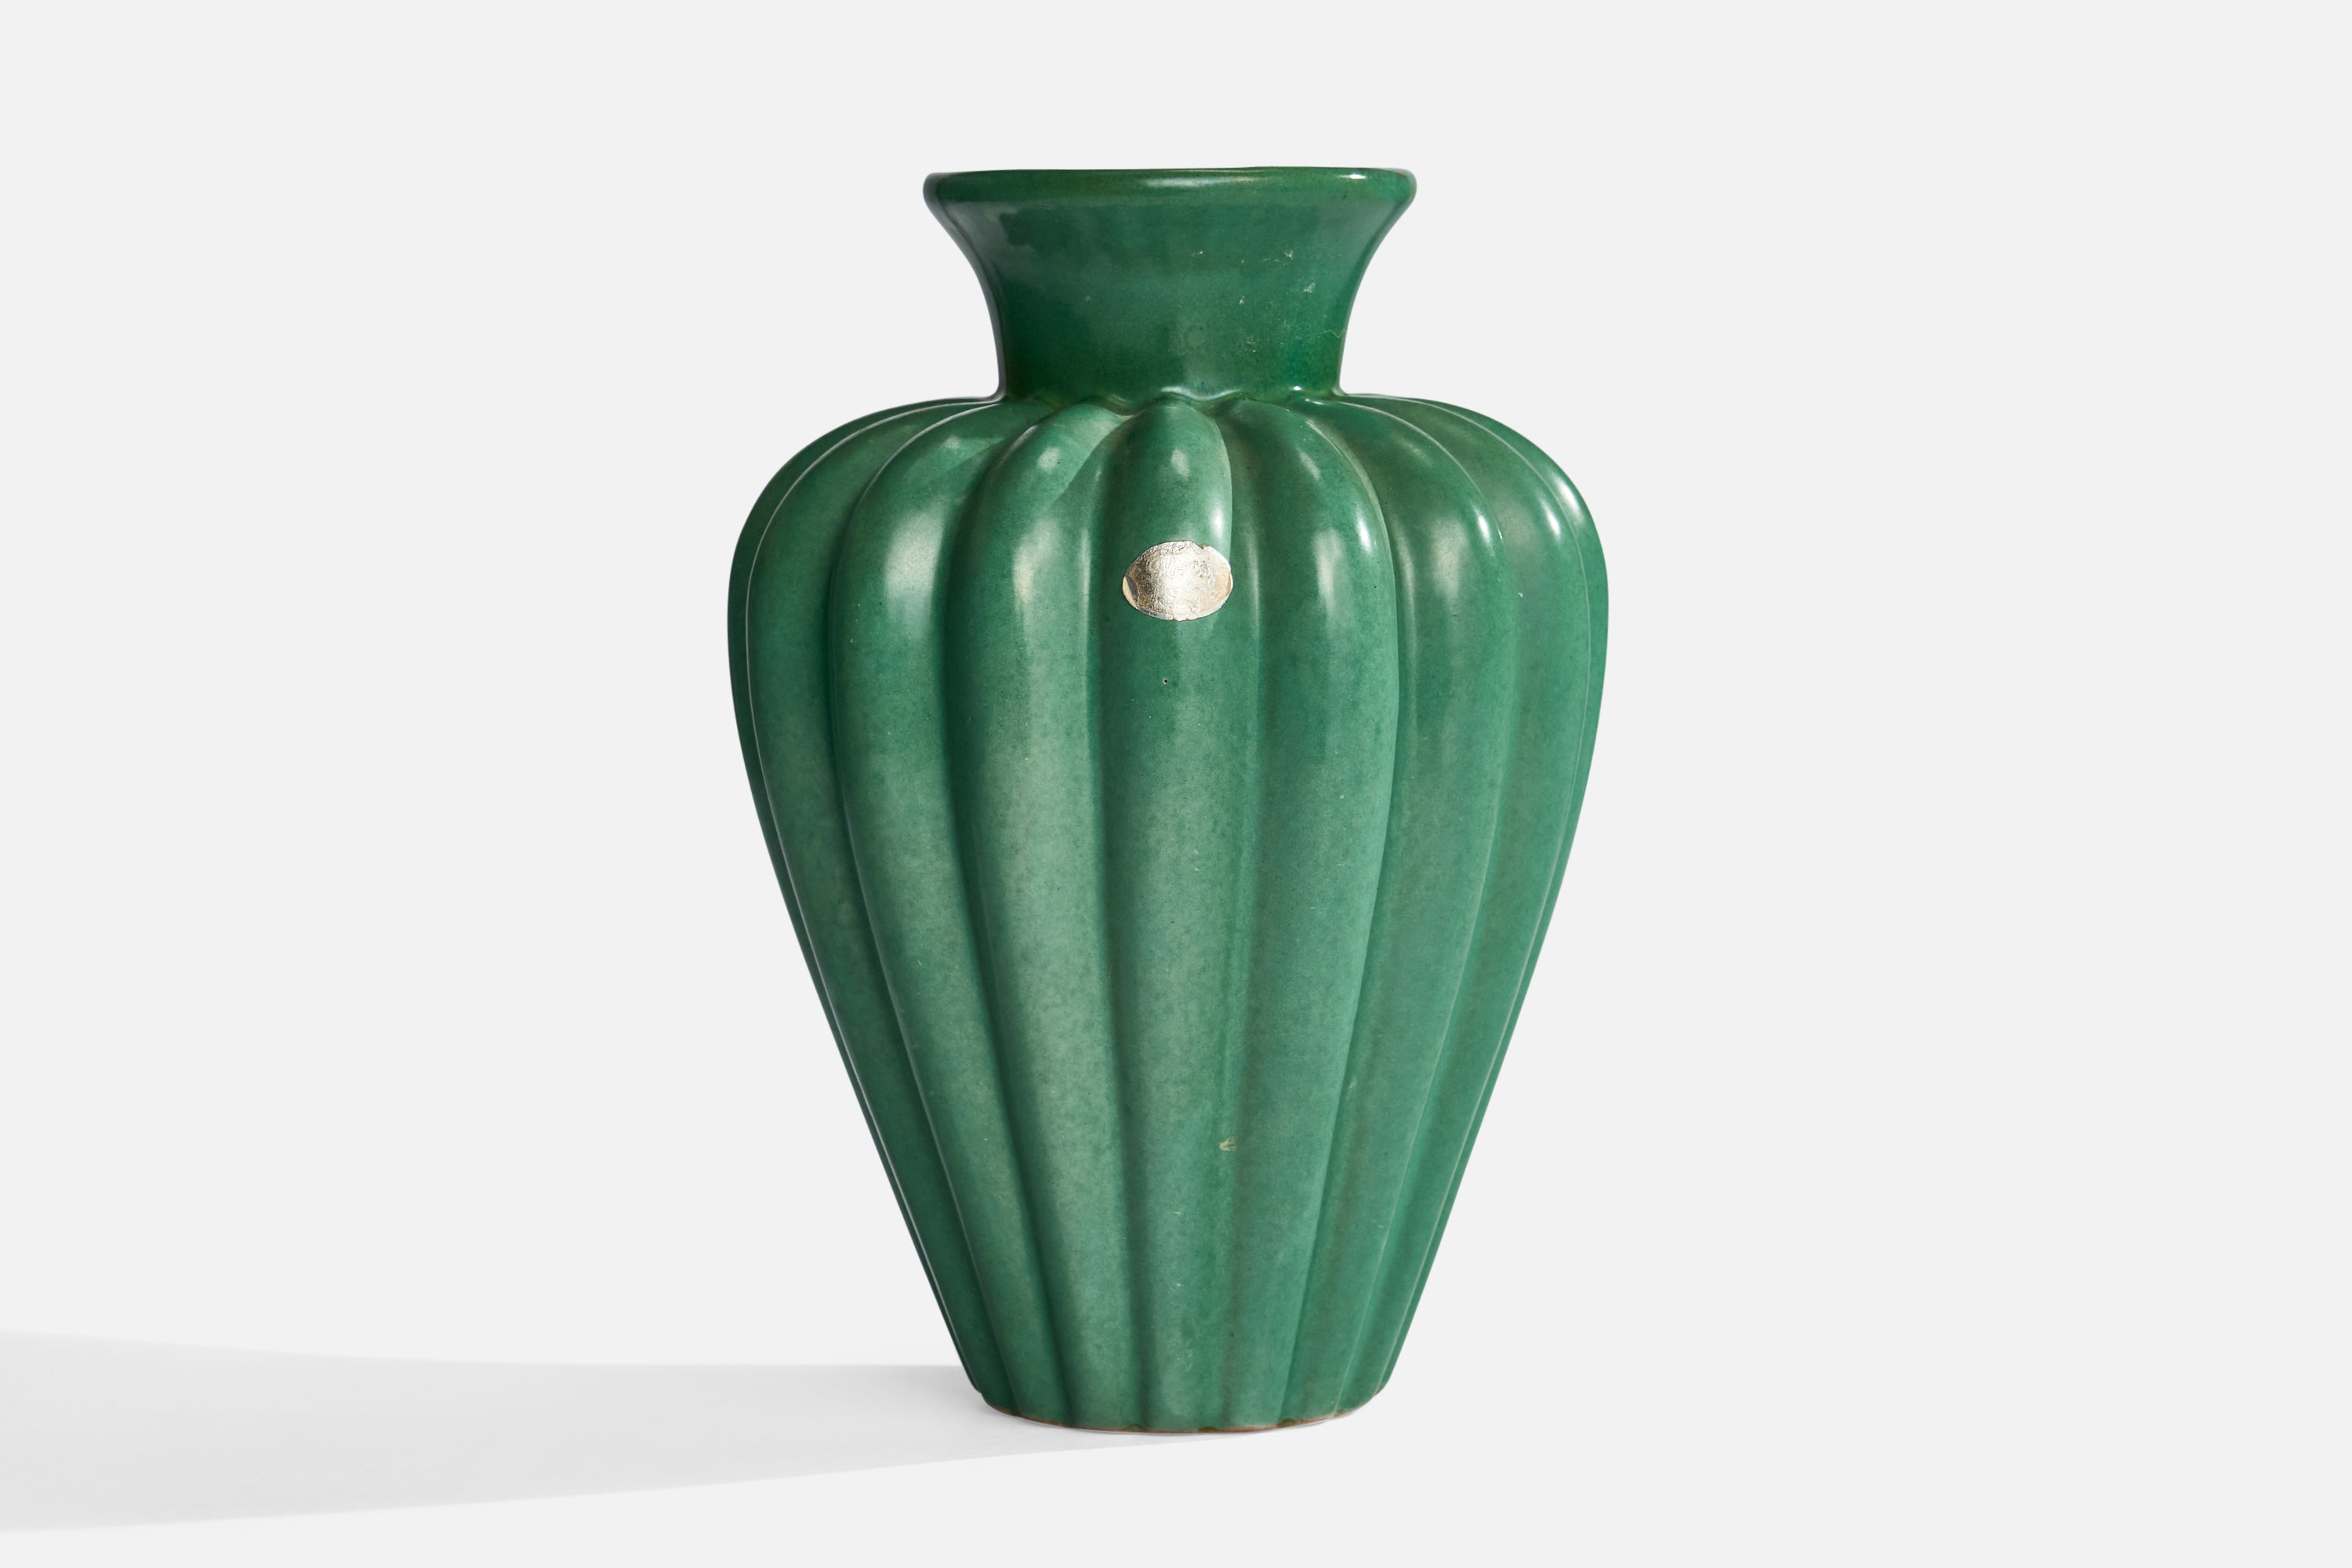 Vase en faïence cannelée à vernis vert, conçu et produit par Upsala Ekeby, Suède, années 1930.